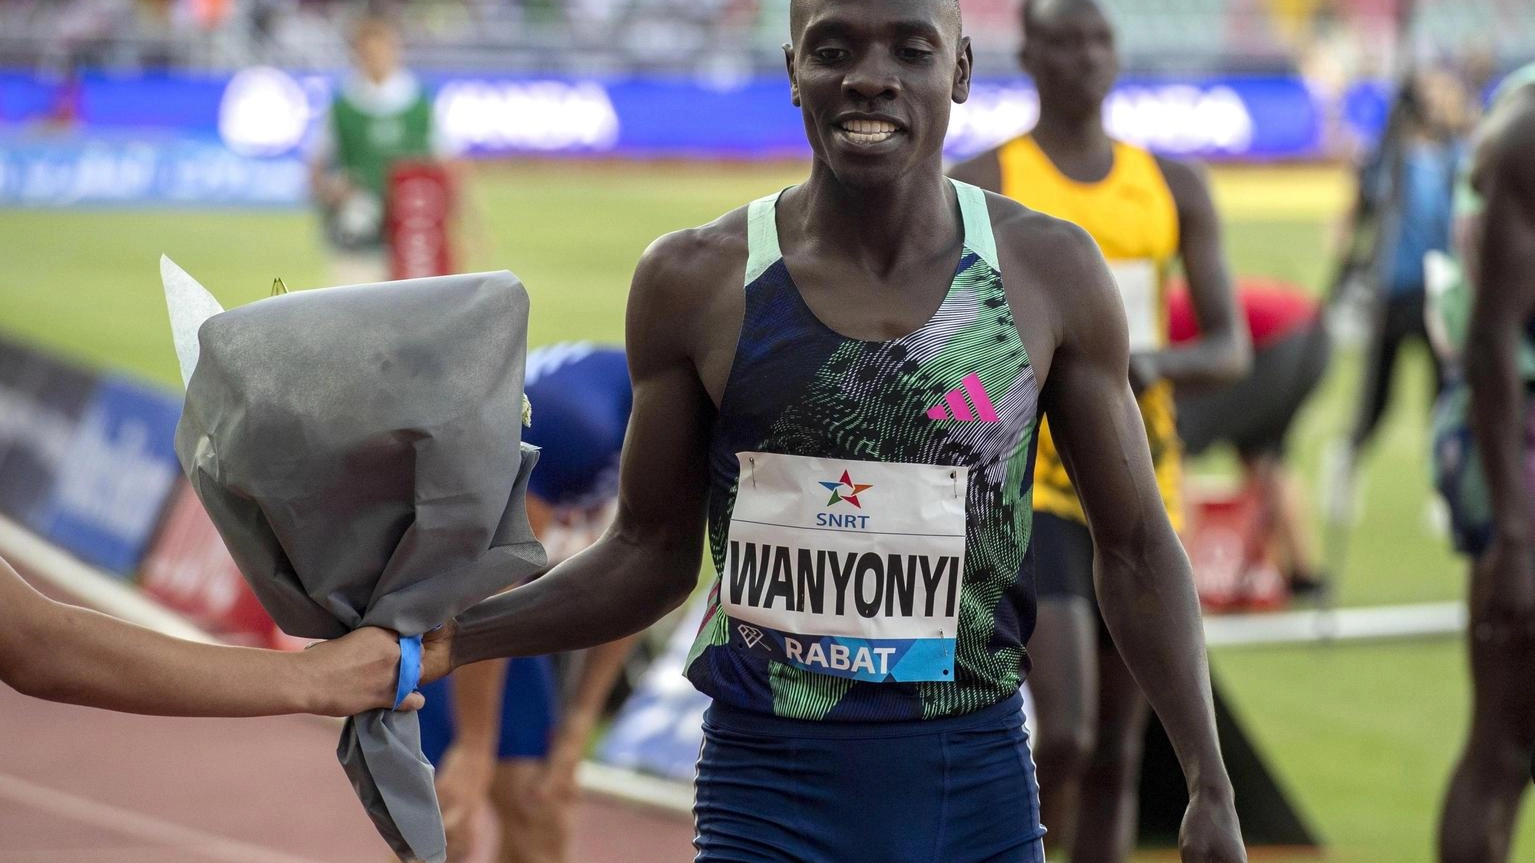 Atletica: Impresa Wanyonyi, primato mondiale Miglio su strada